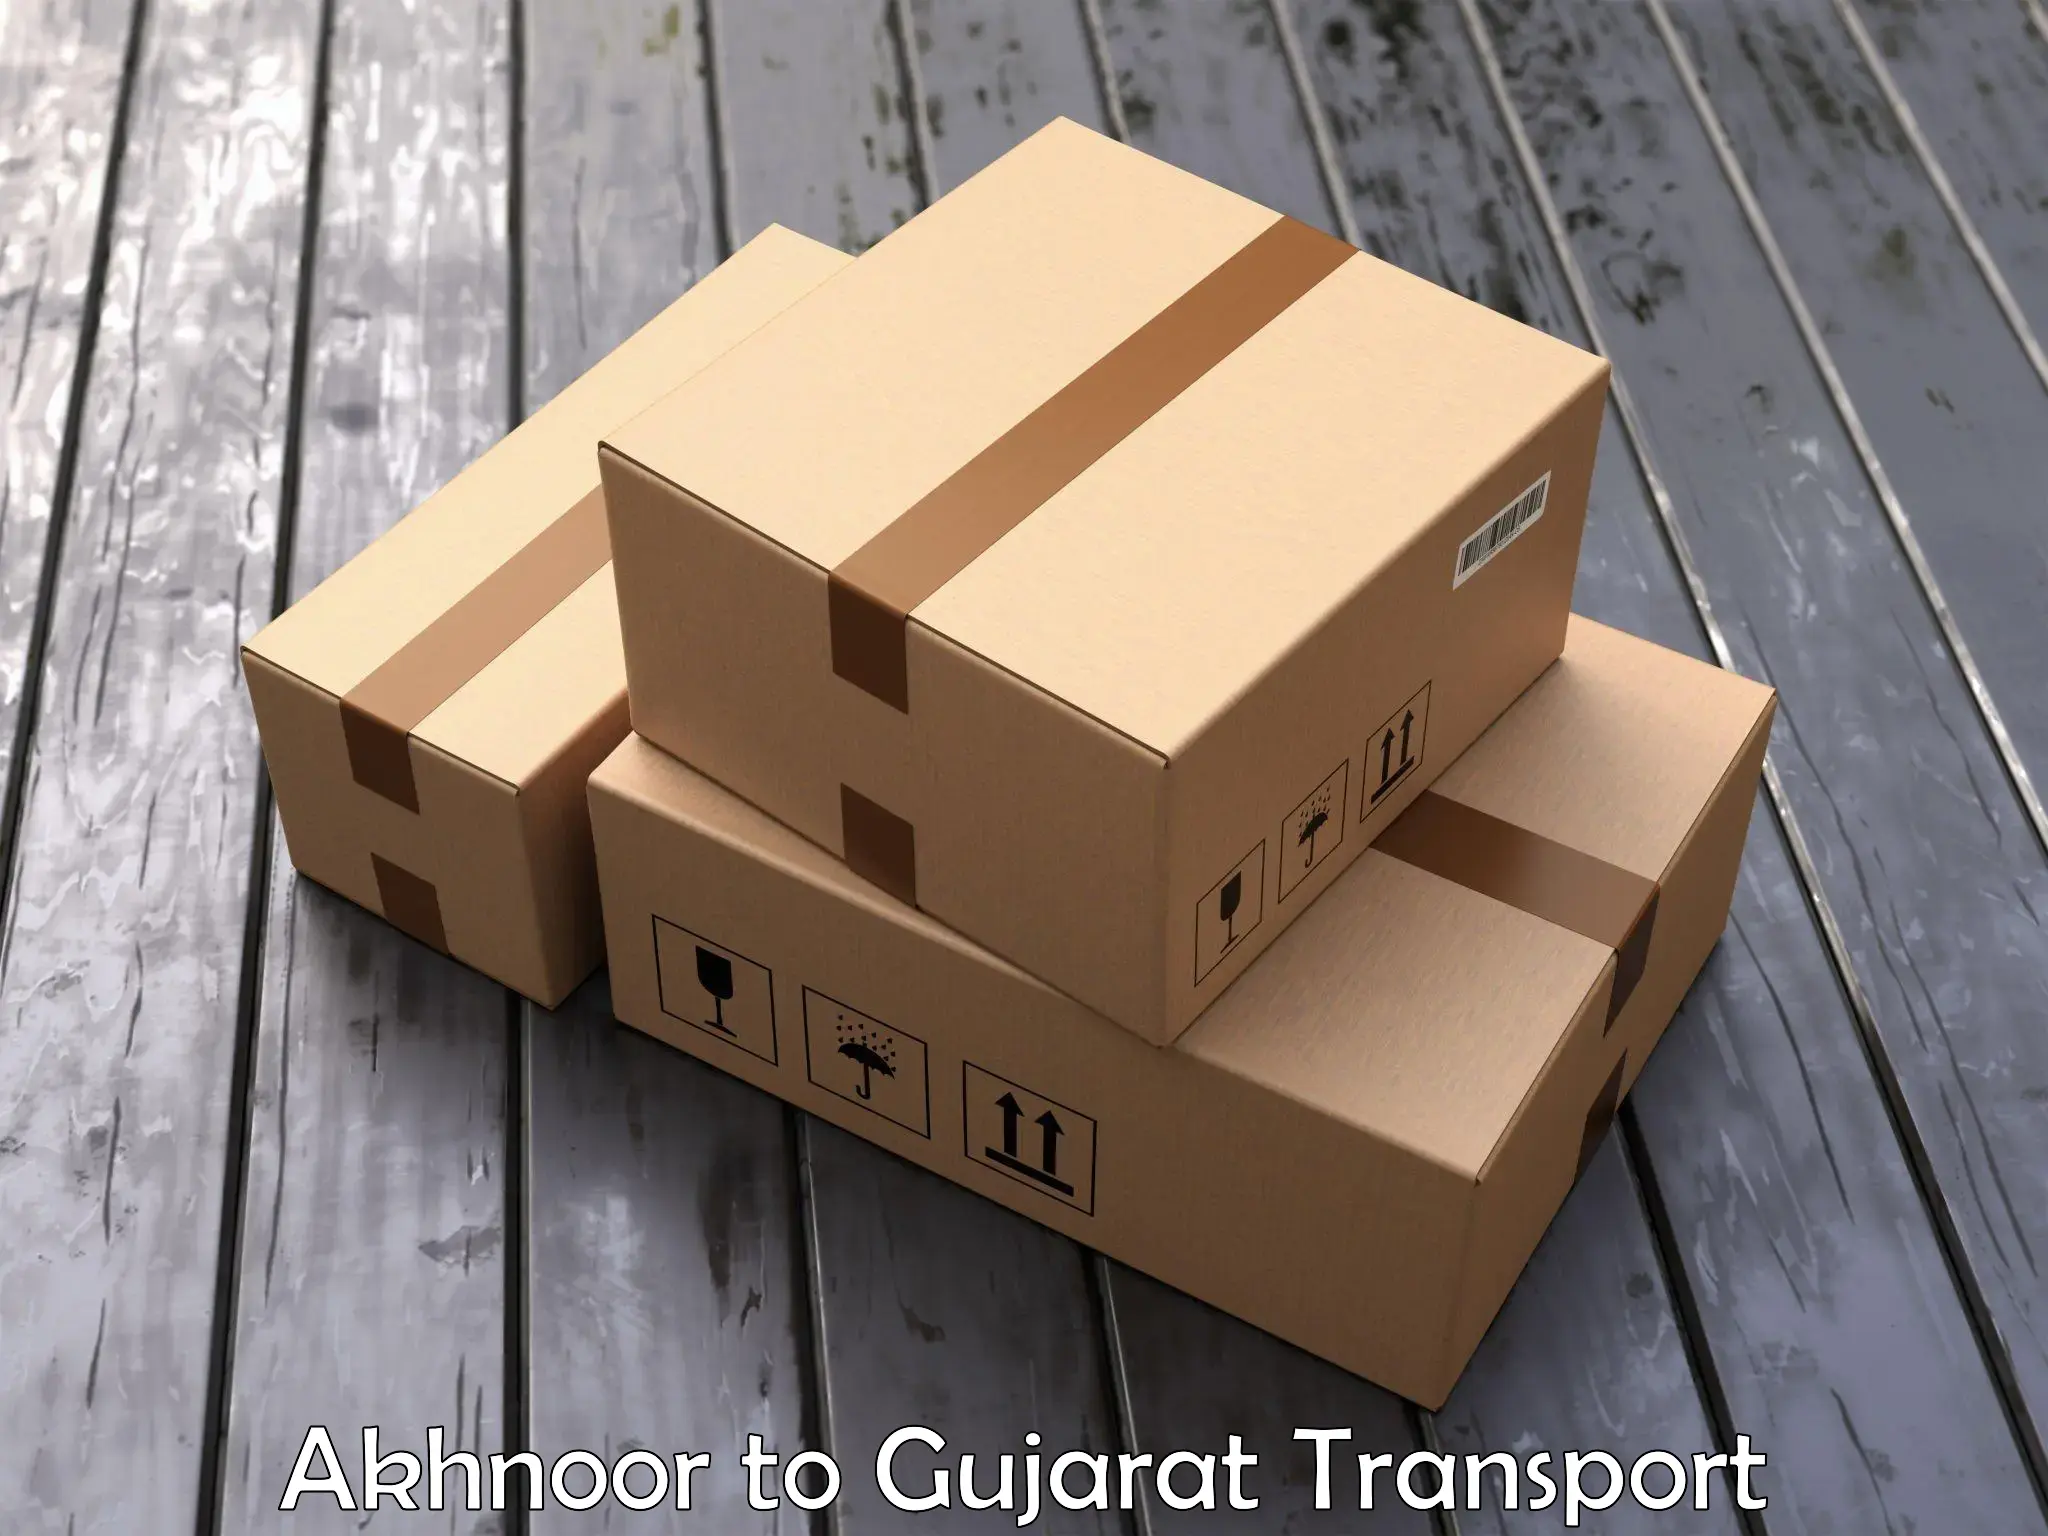 Container transport service Akhnoor to Halvad